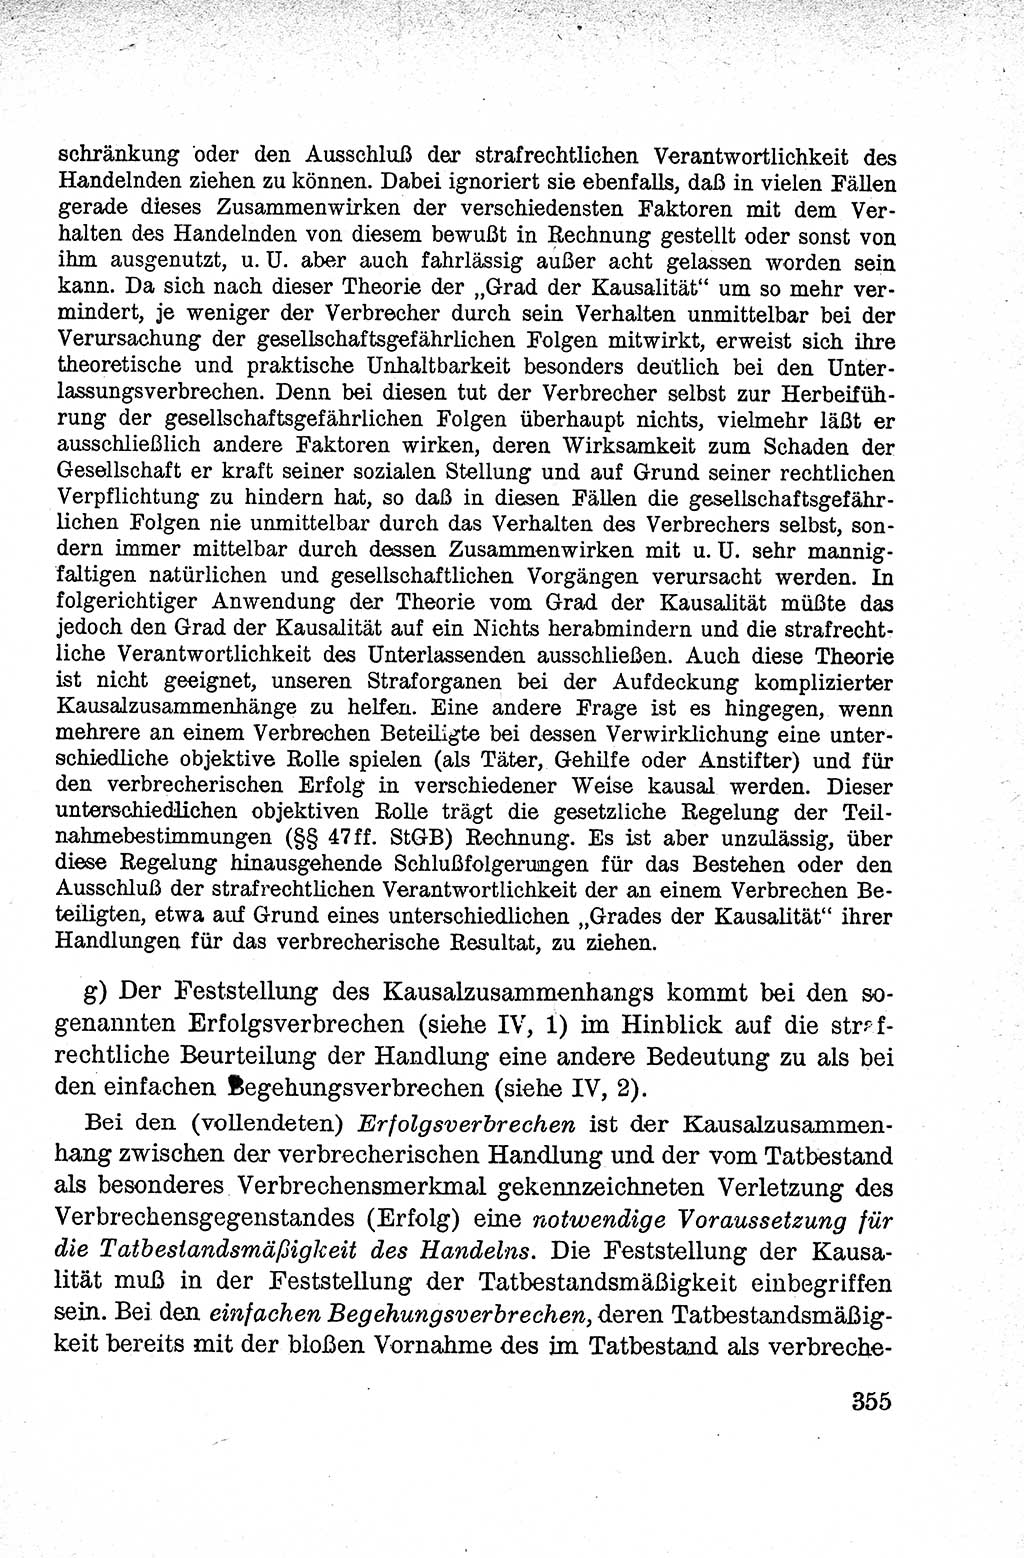 Lehrbuch des Strafrechts der Deutschen Demokratischen Republik (DDR), Allgemeiner Teil 1959, Seite 355 (Lb. Strafr. DDR AT 1959, S. 355)